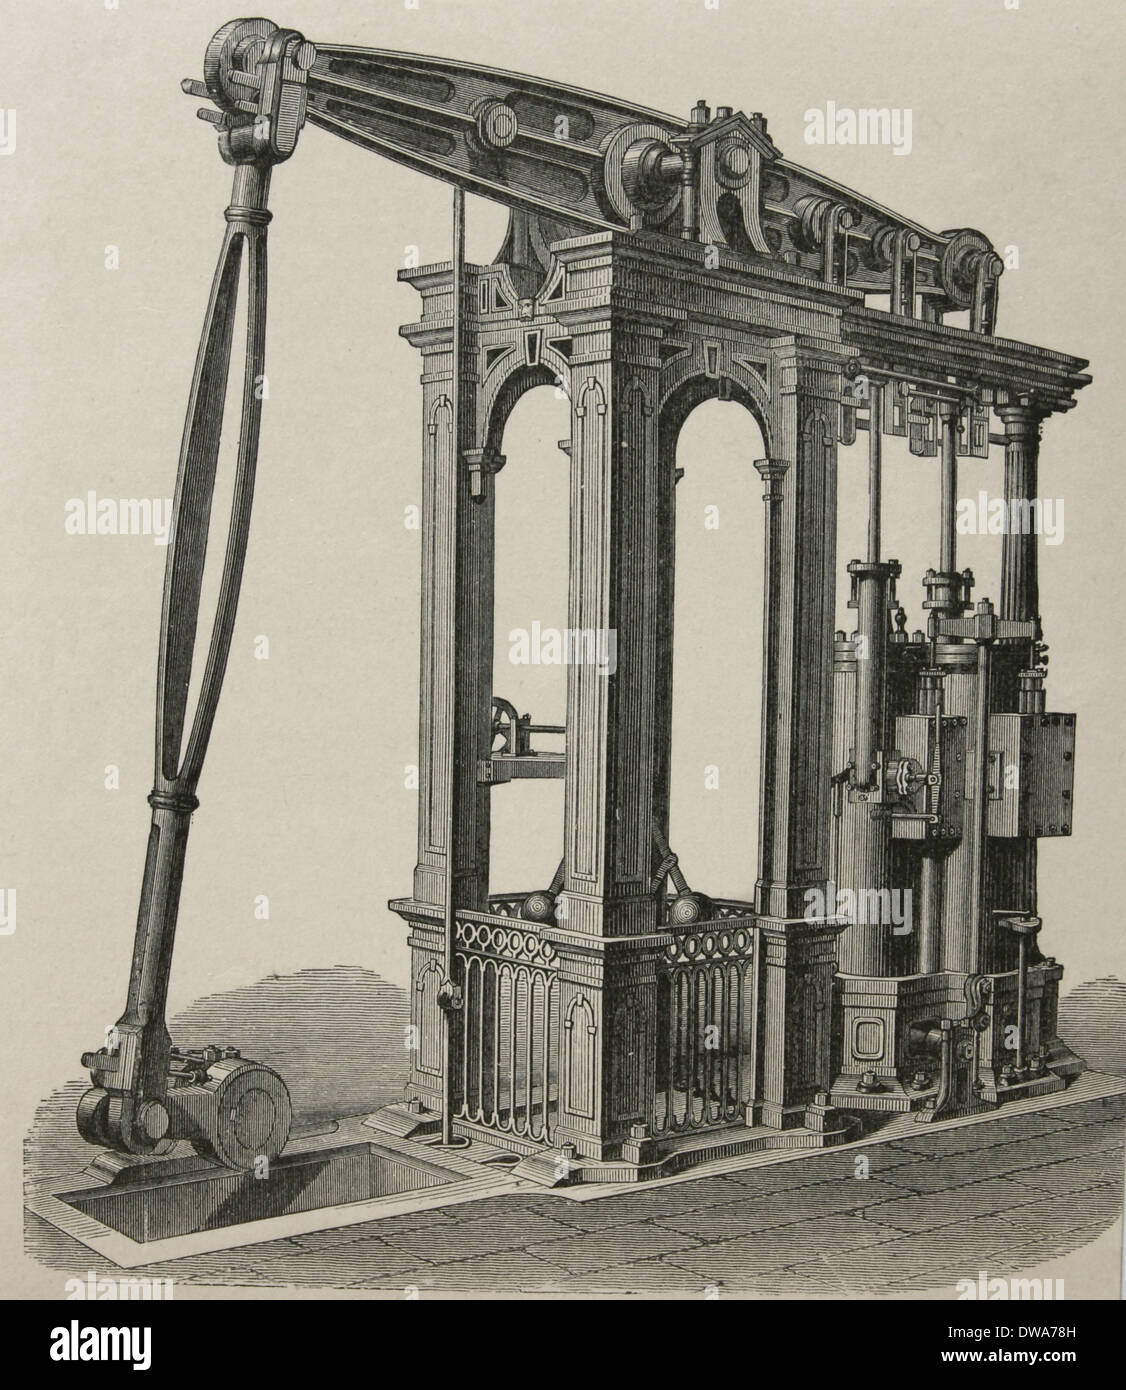 Dampfmaschine von Cornish Ingenieur Arthur Woolf (1766-1837). Kupferstich, 19. Jahrhundert. Stockfoto